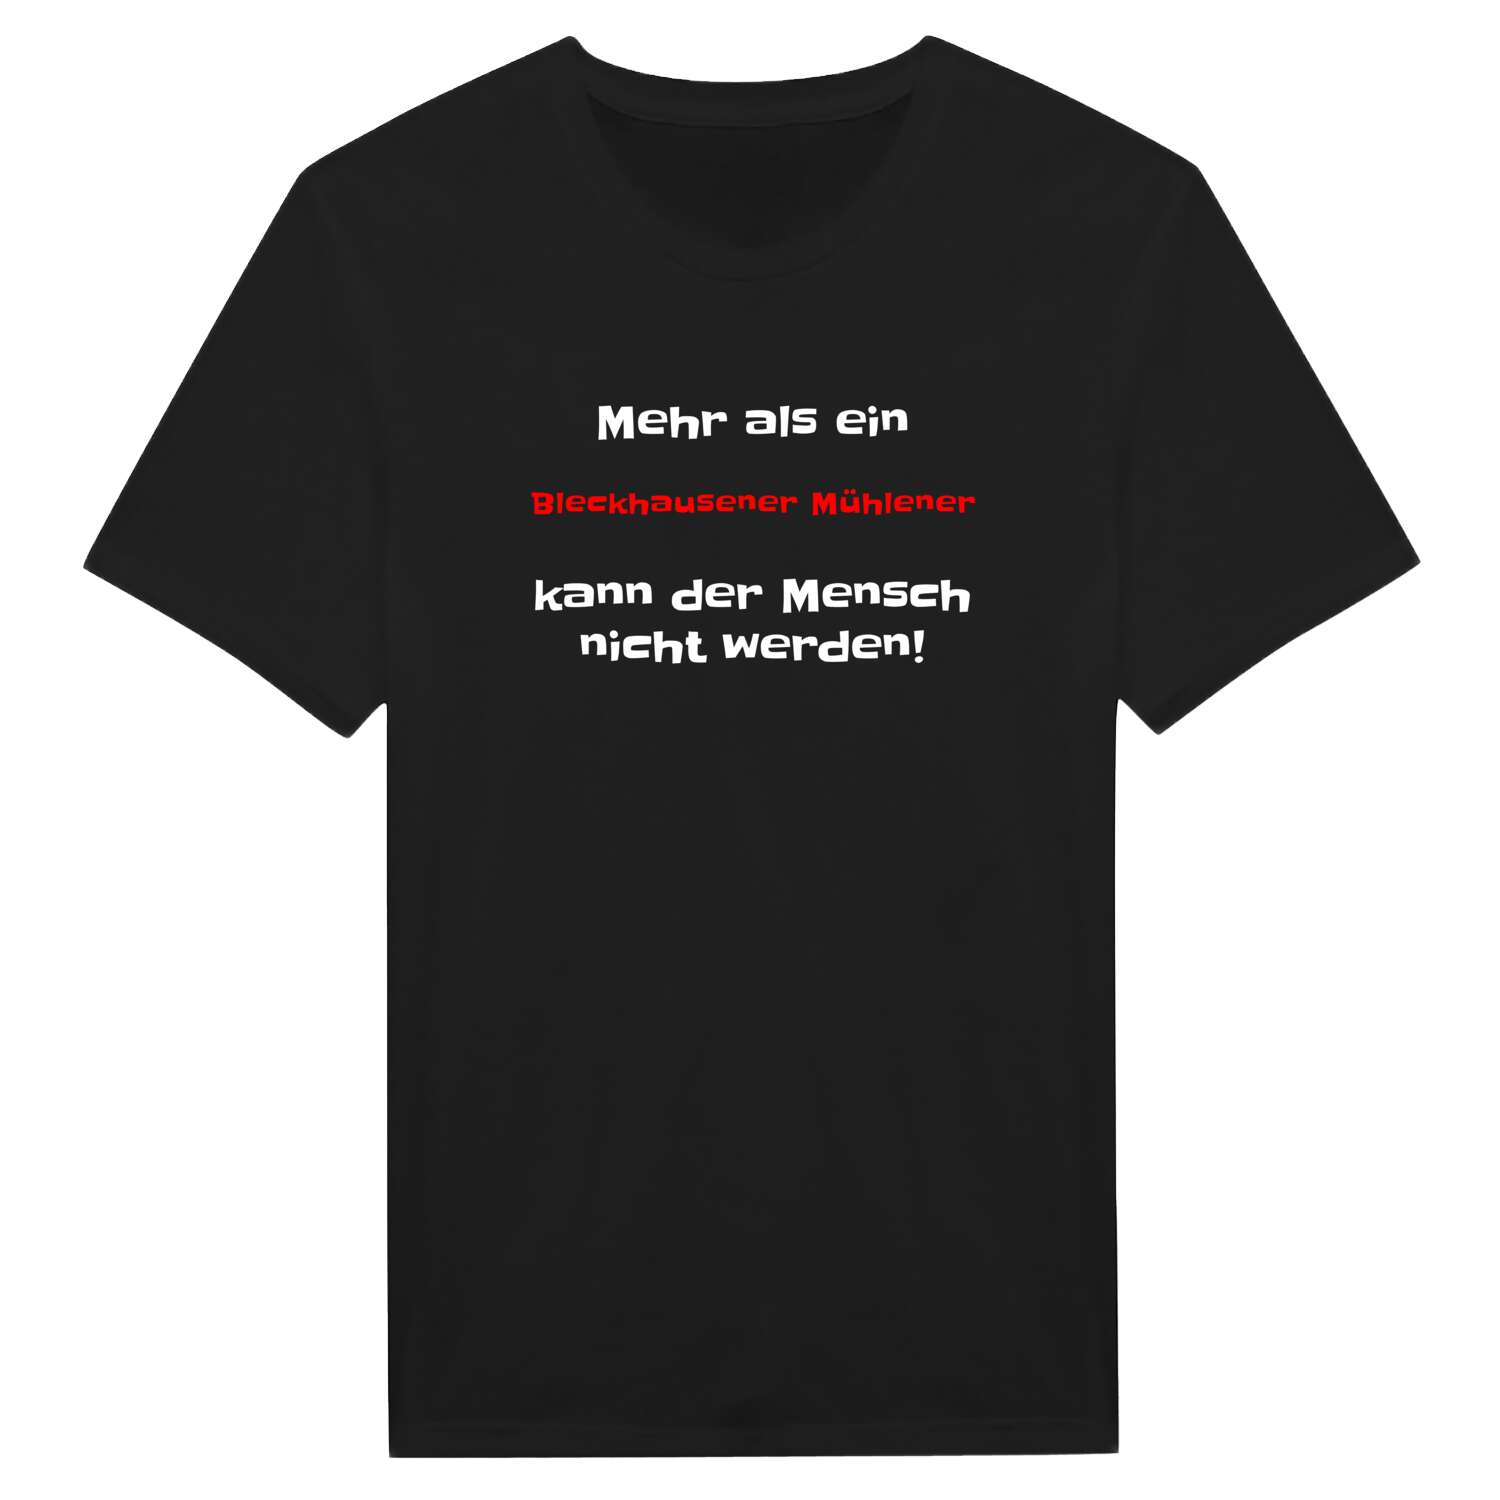 Bleckhausener Mühle T-Shirt »Mehr als ein«